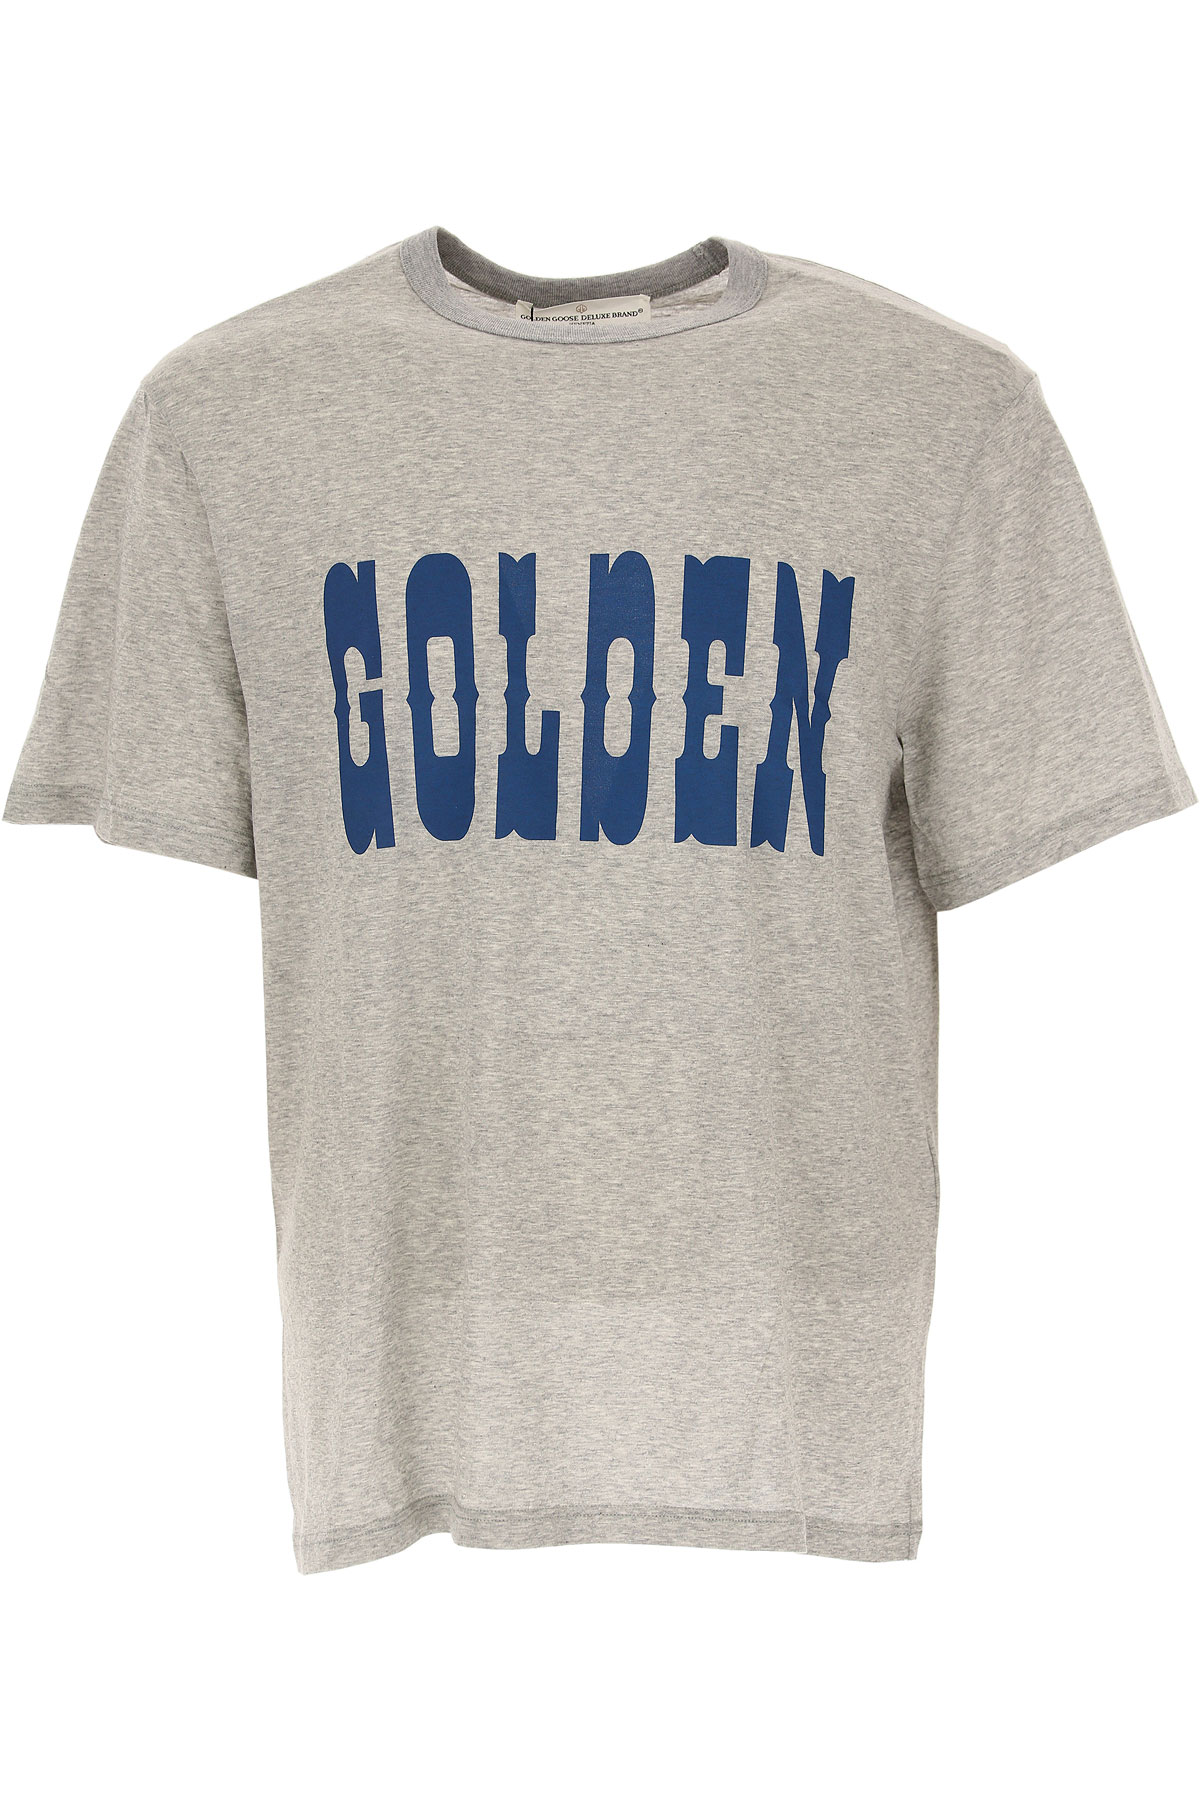 Golden Goose T-shirt Homme, Gris, Coton, 2017, 38 40 42 44 46 L M S XL